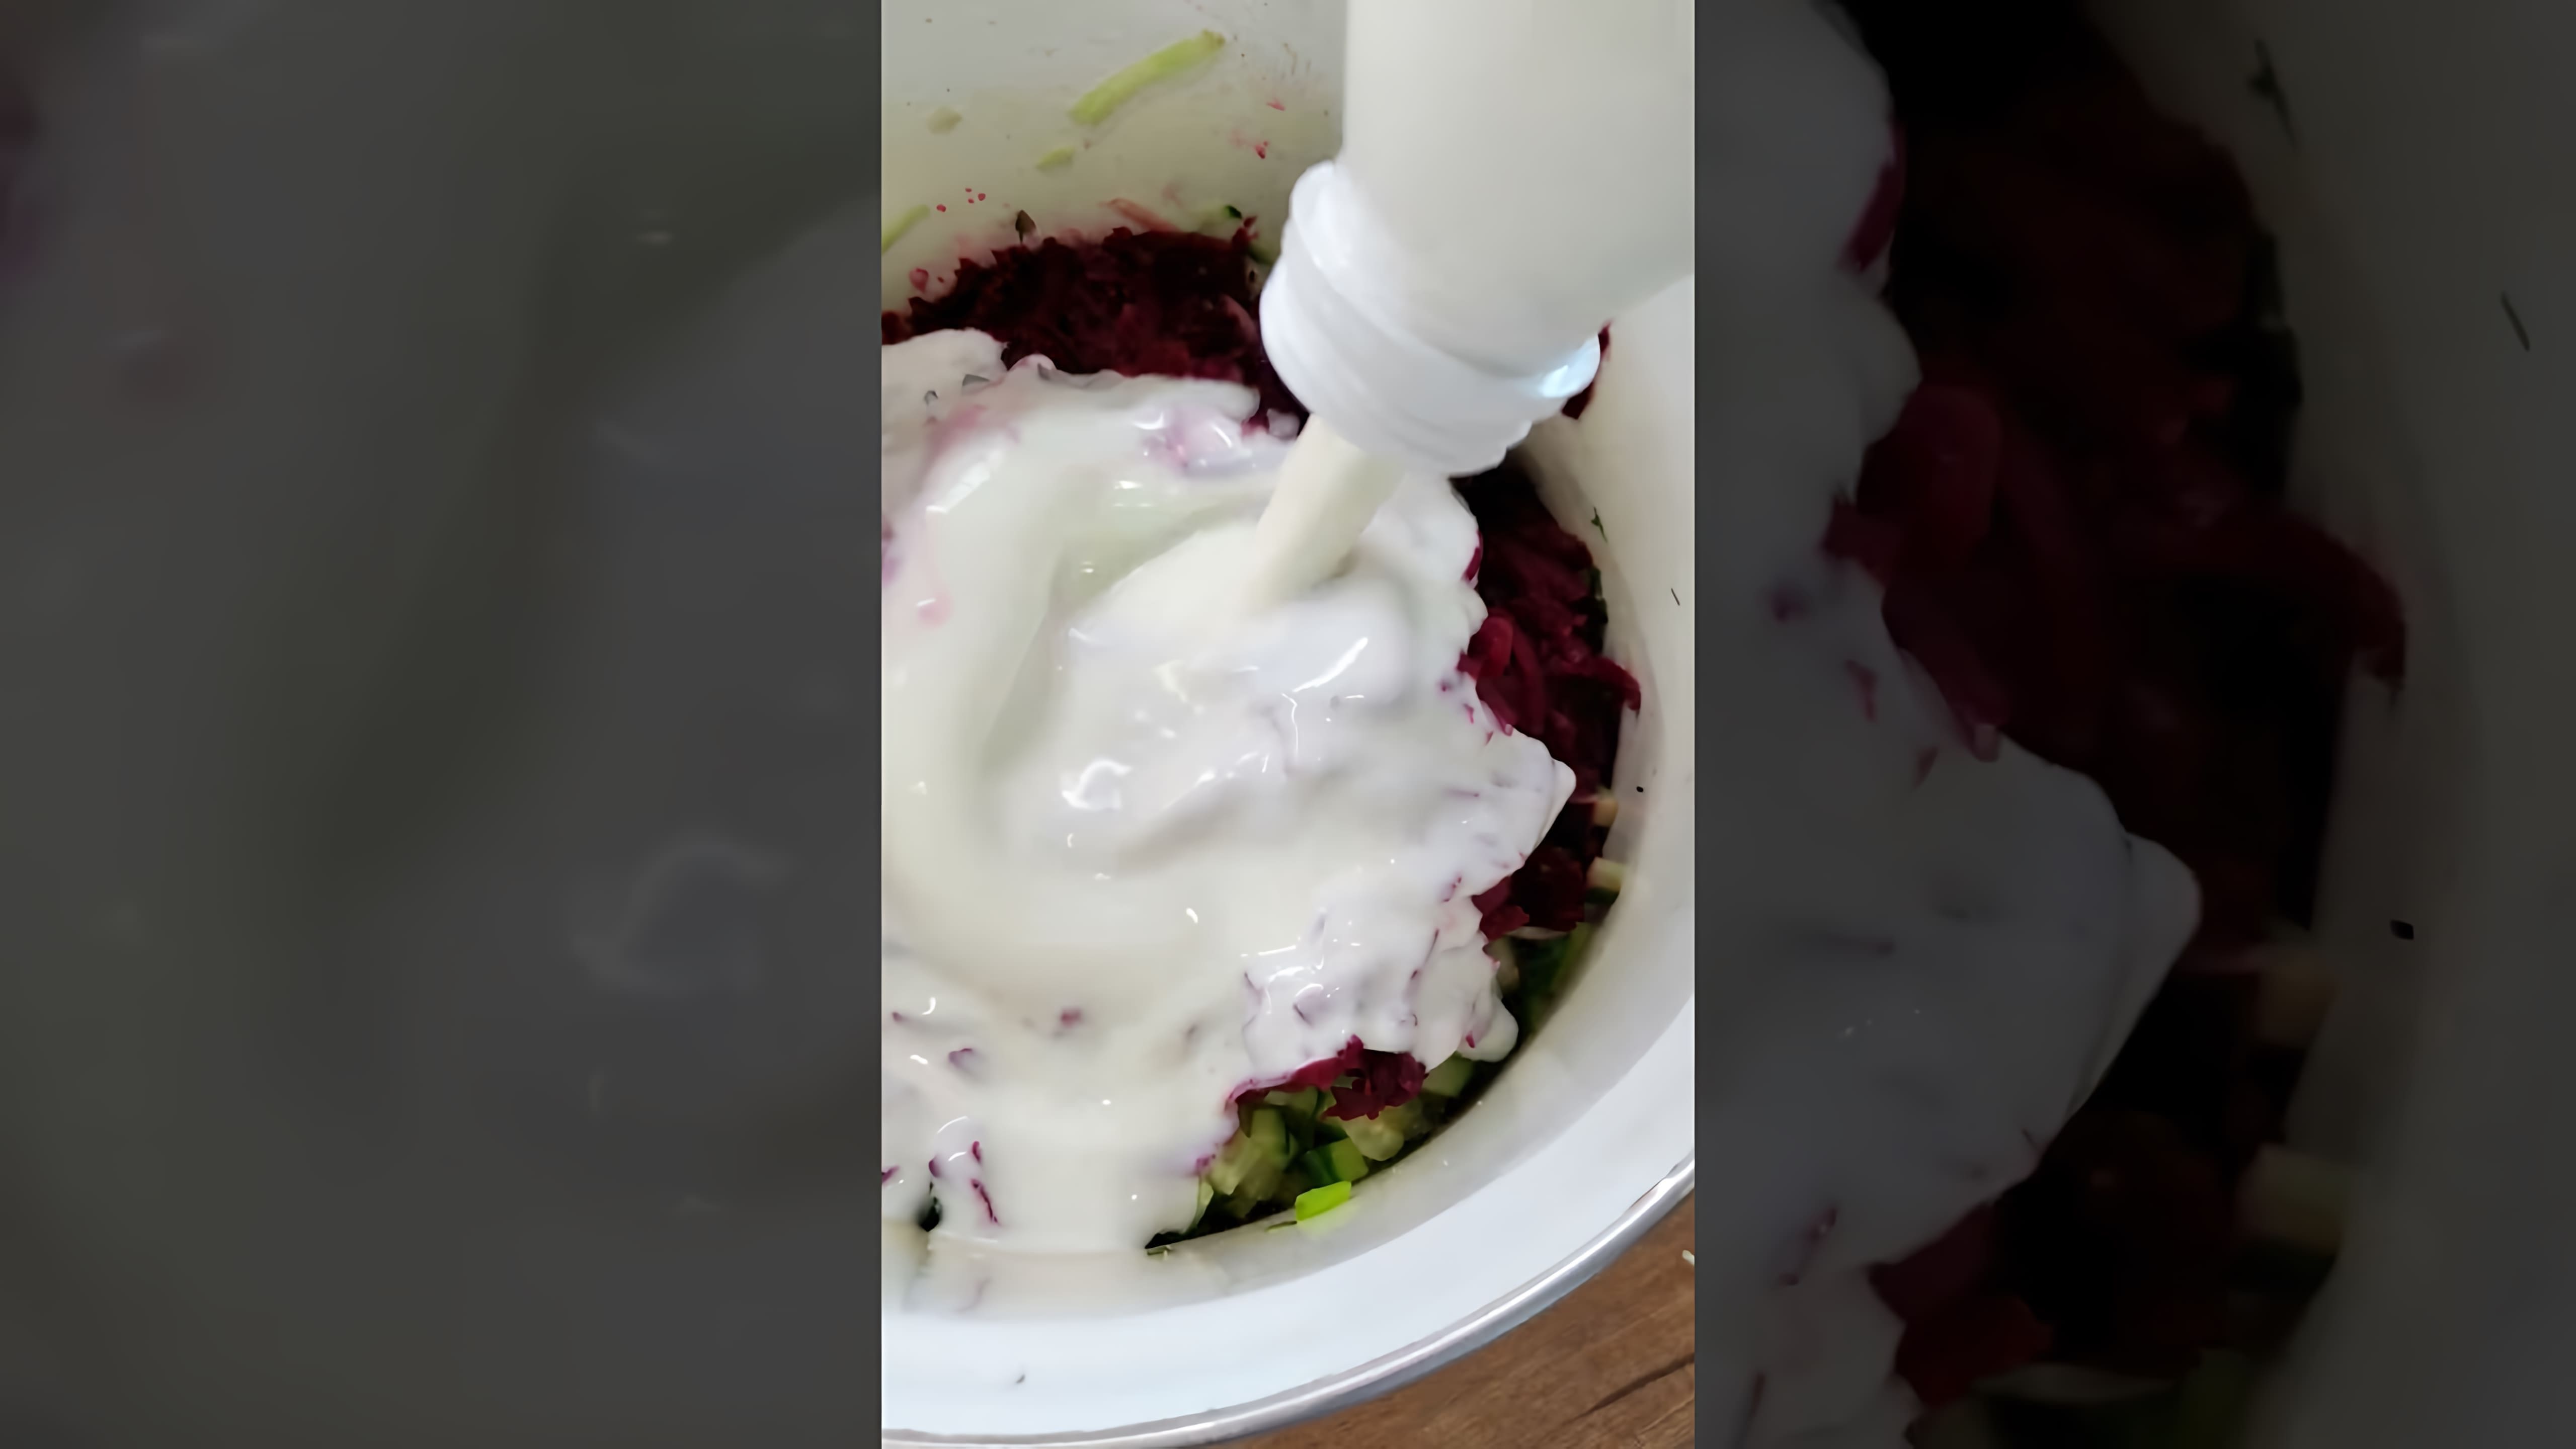 В этом видео демонстрируется процесс приготовления двух блюд - холодника и свекольника